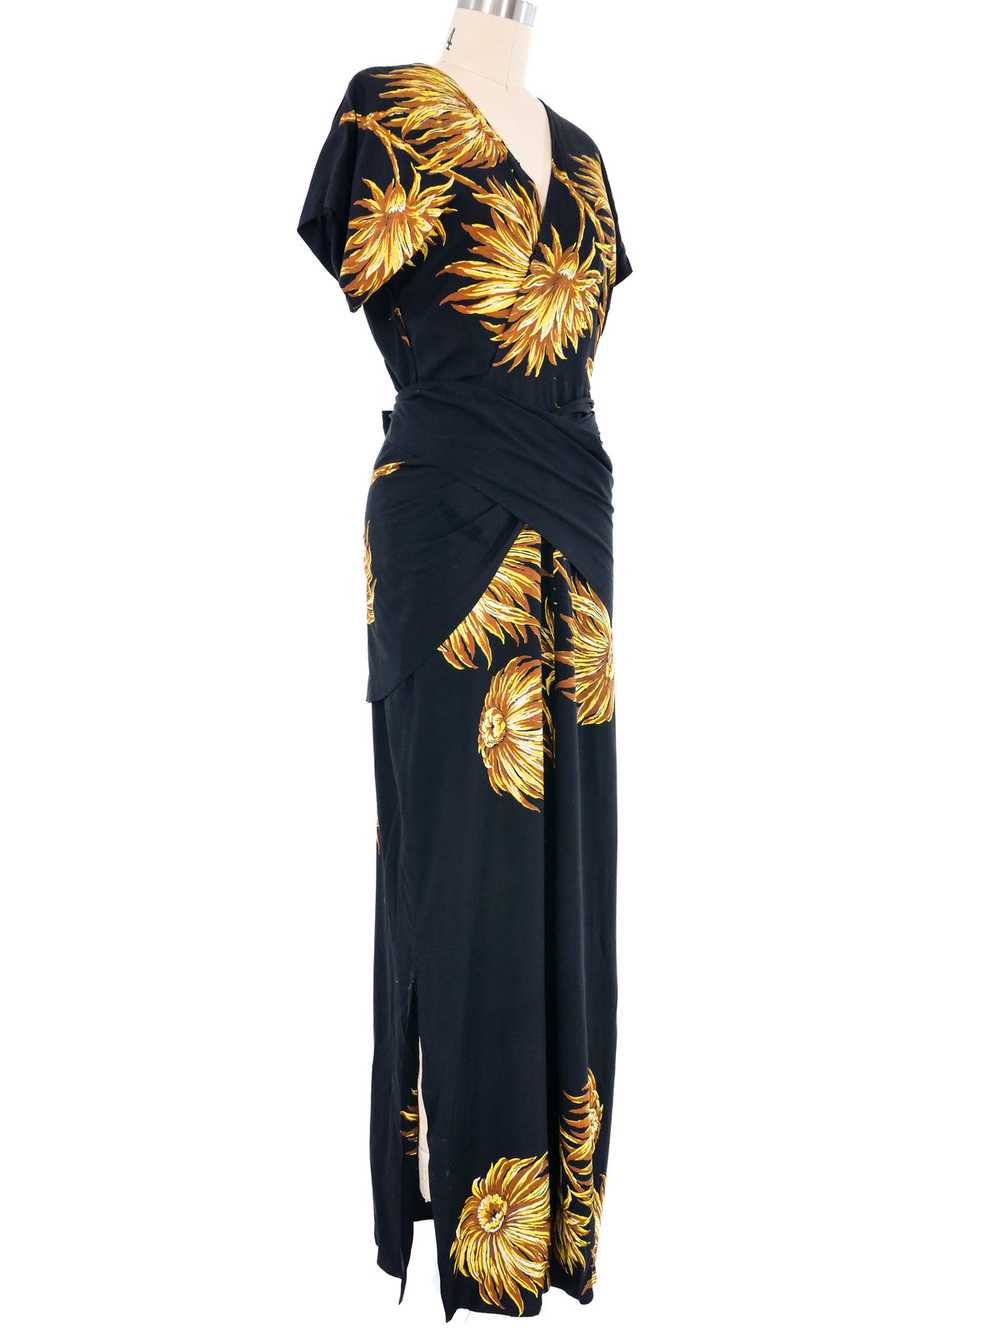 1940s Black Floral Wrap Dress - image 3